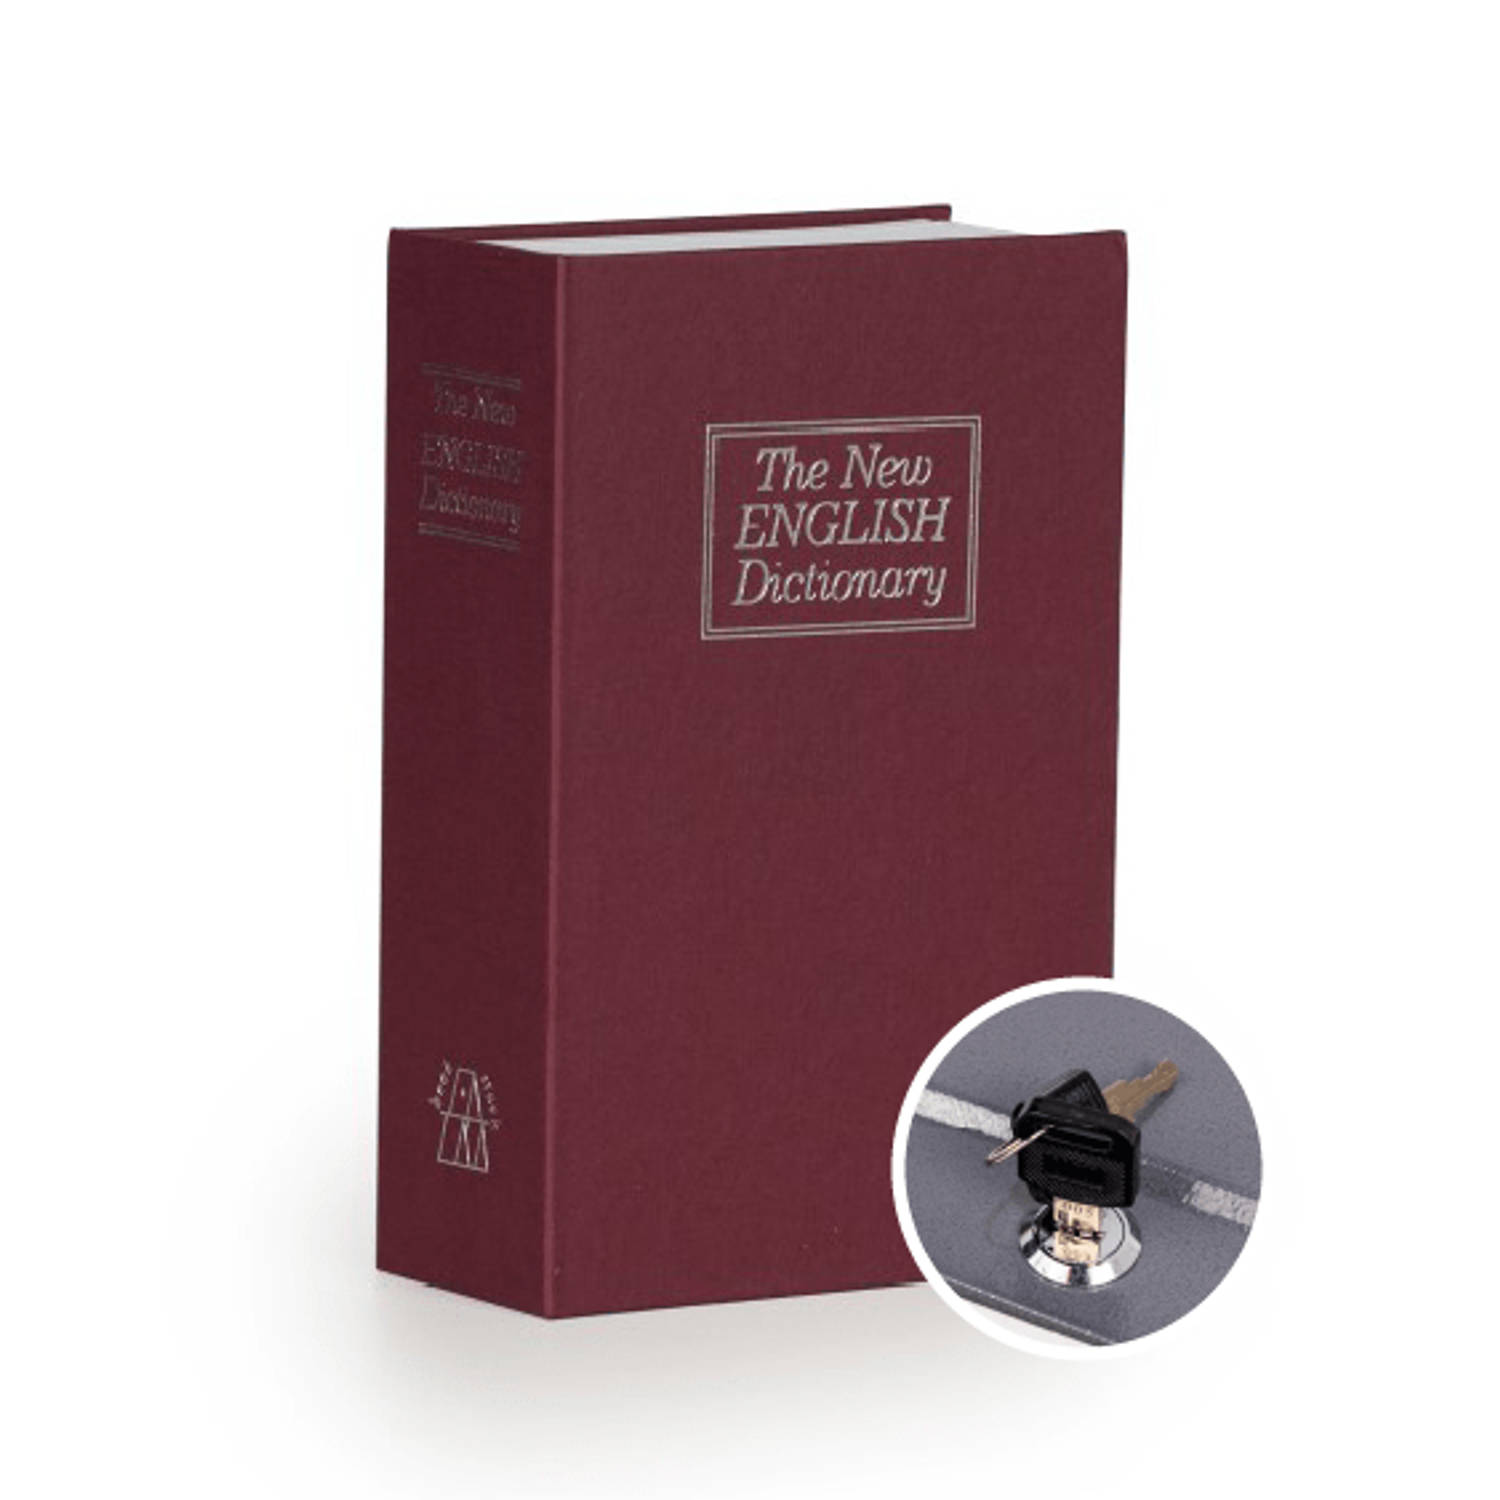 Securata Boek kluis met Sleutelslot - Bordeaux - 155 x 240 x 55 cm - Kluisje met sleutel - Verborgen Kluis in boek